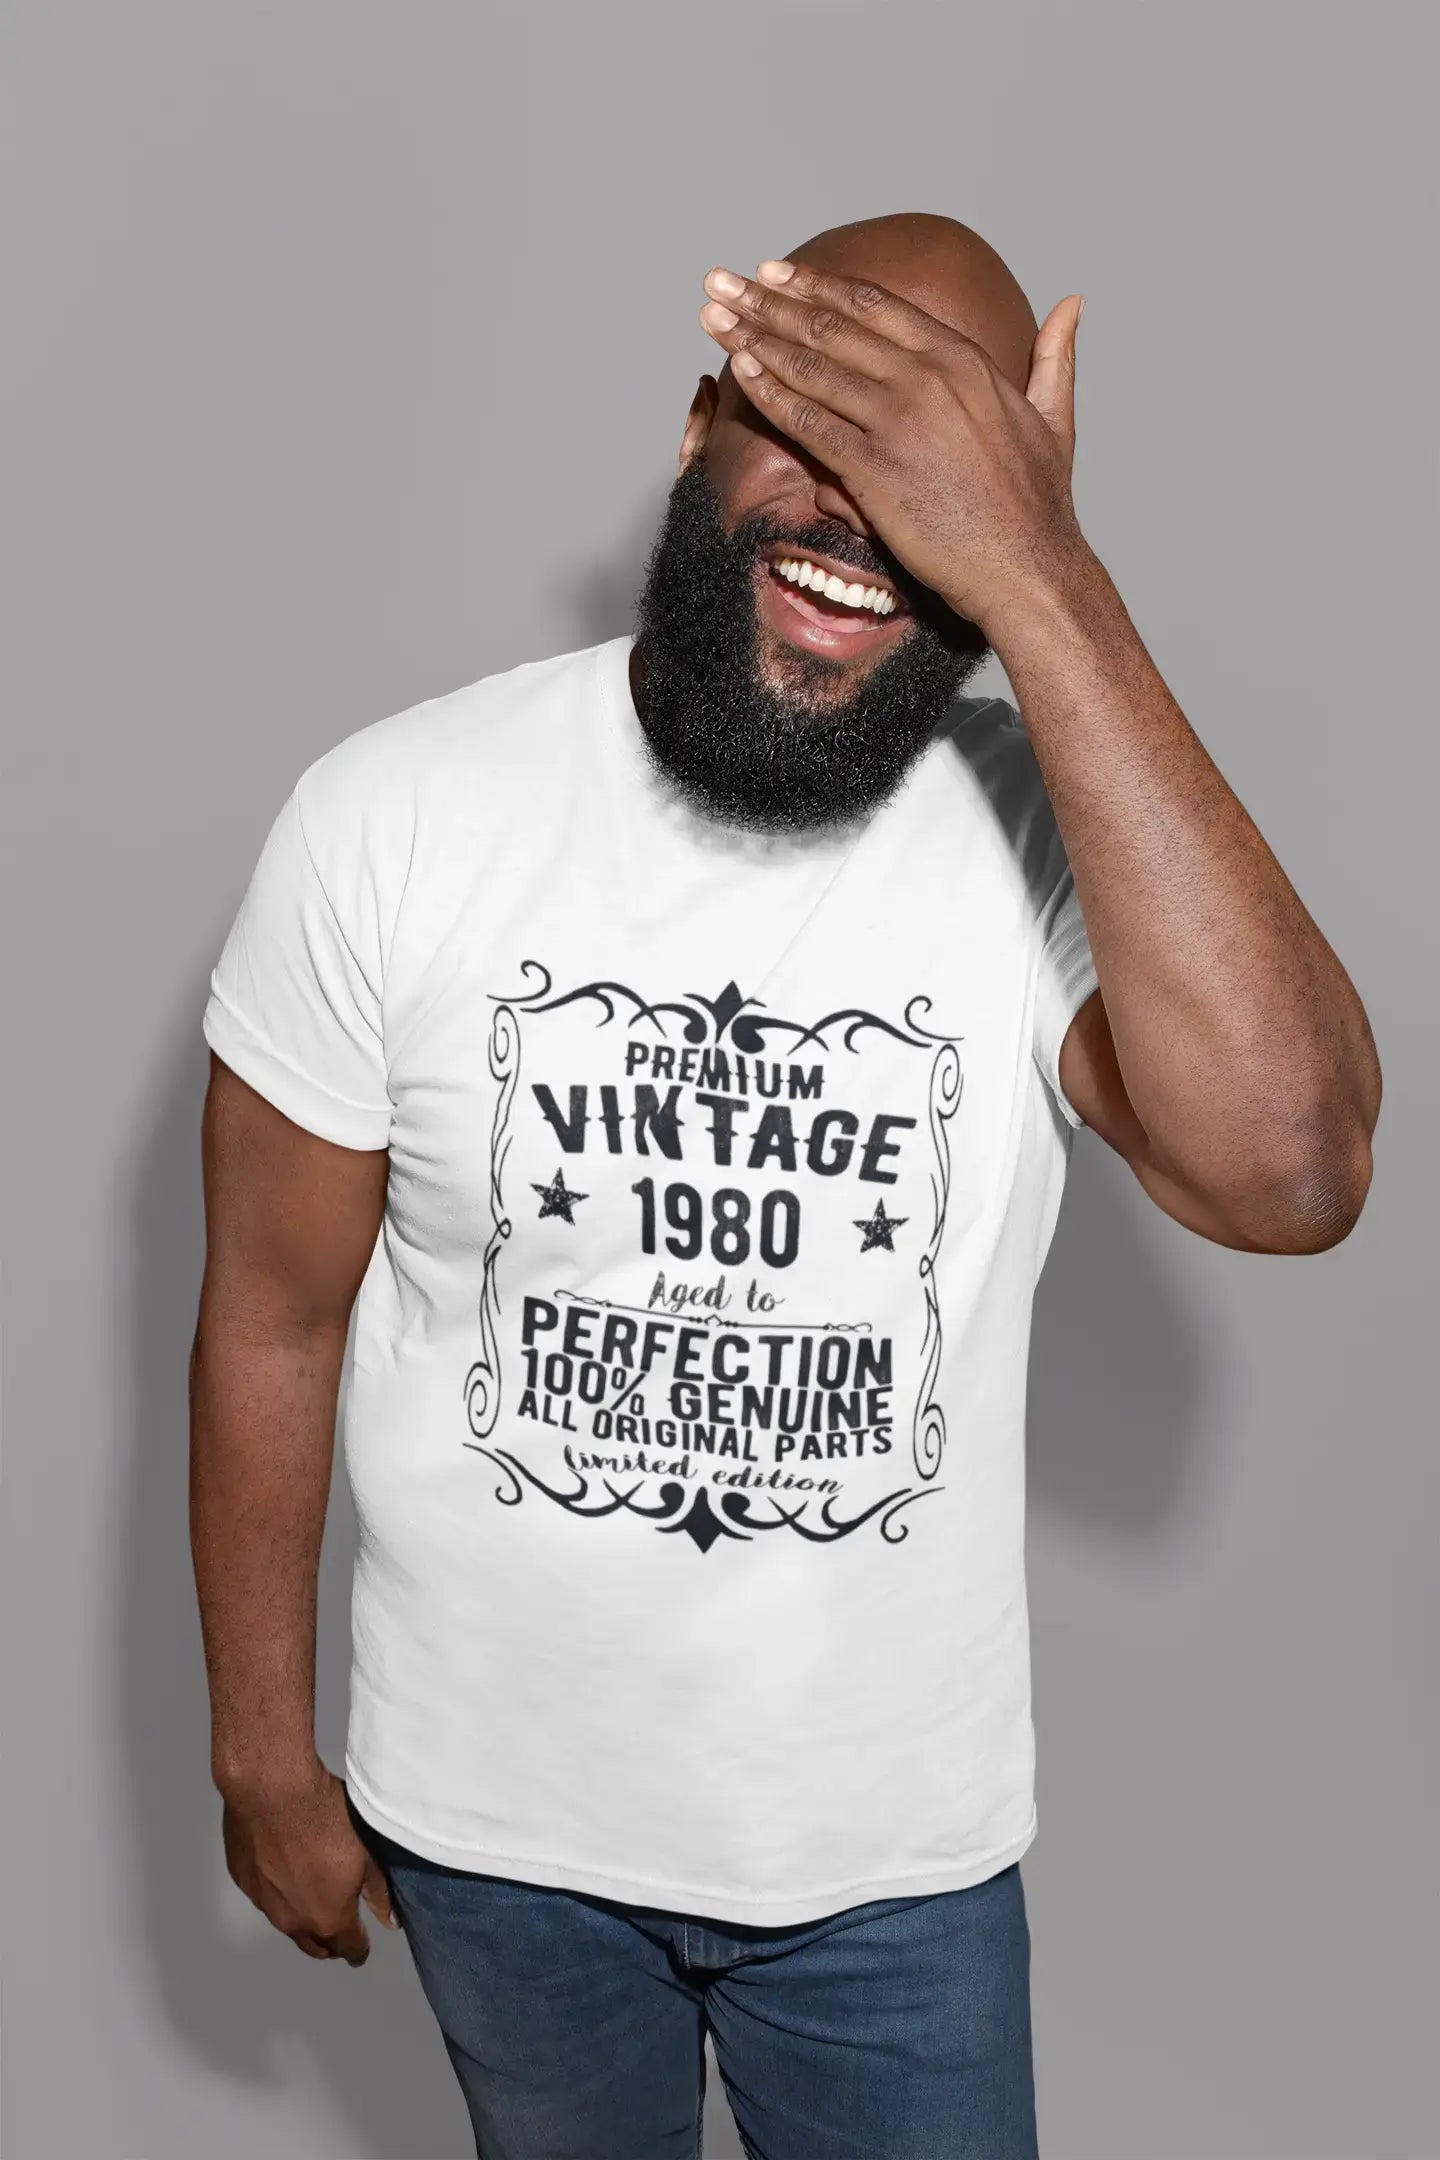 T-shirt Vintage Premium, année 1980, Cadeau d'anniversaire